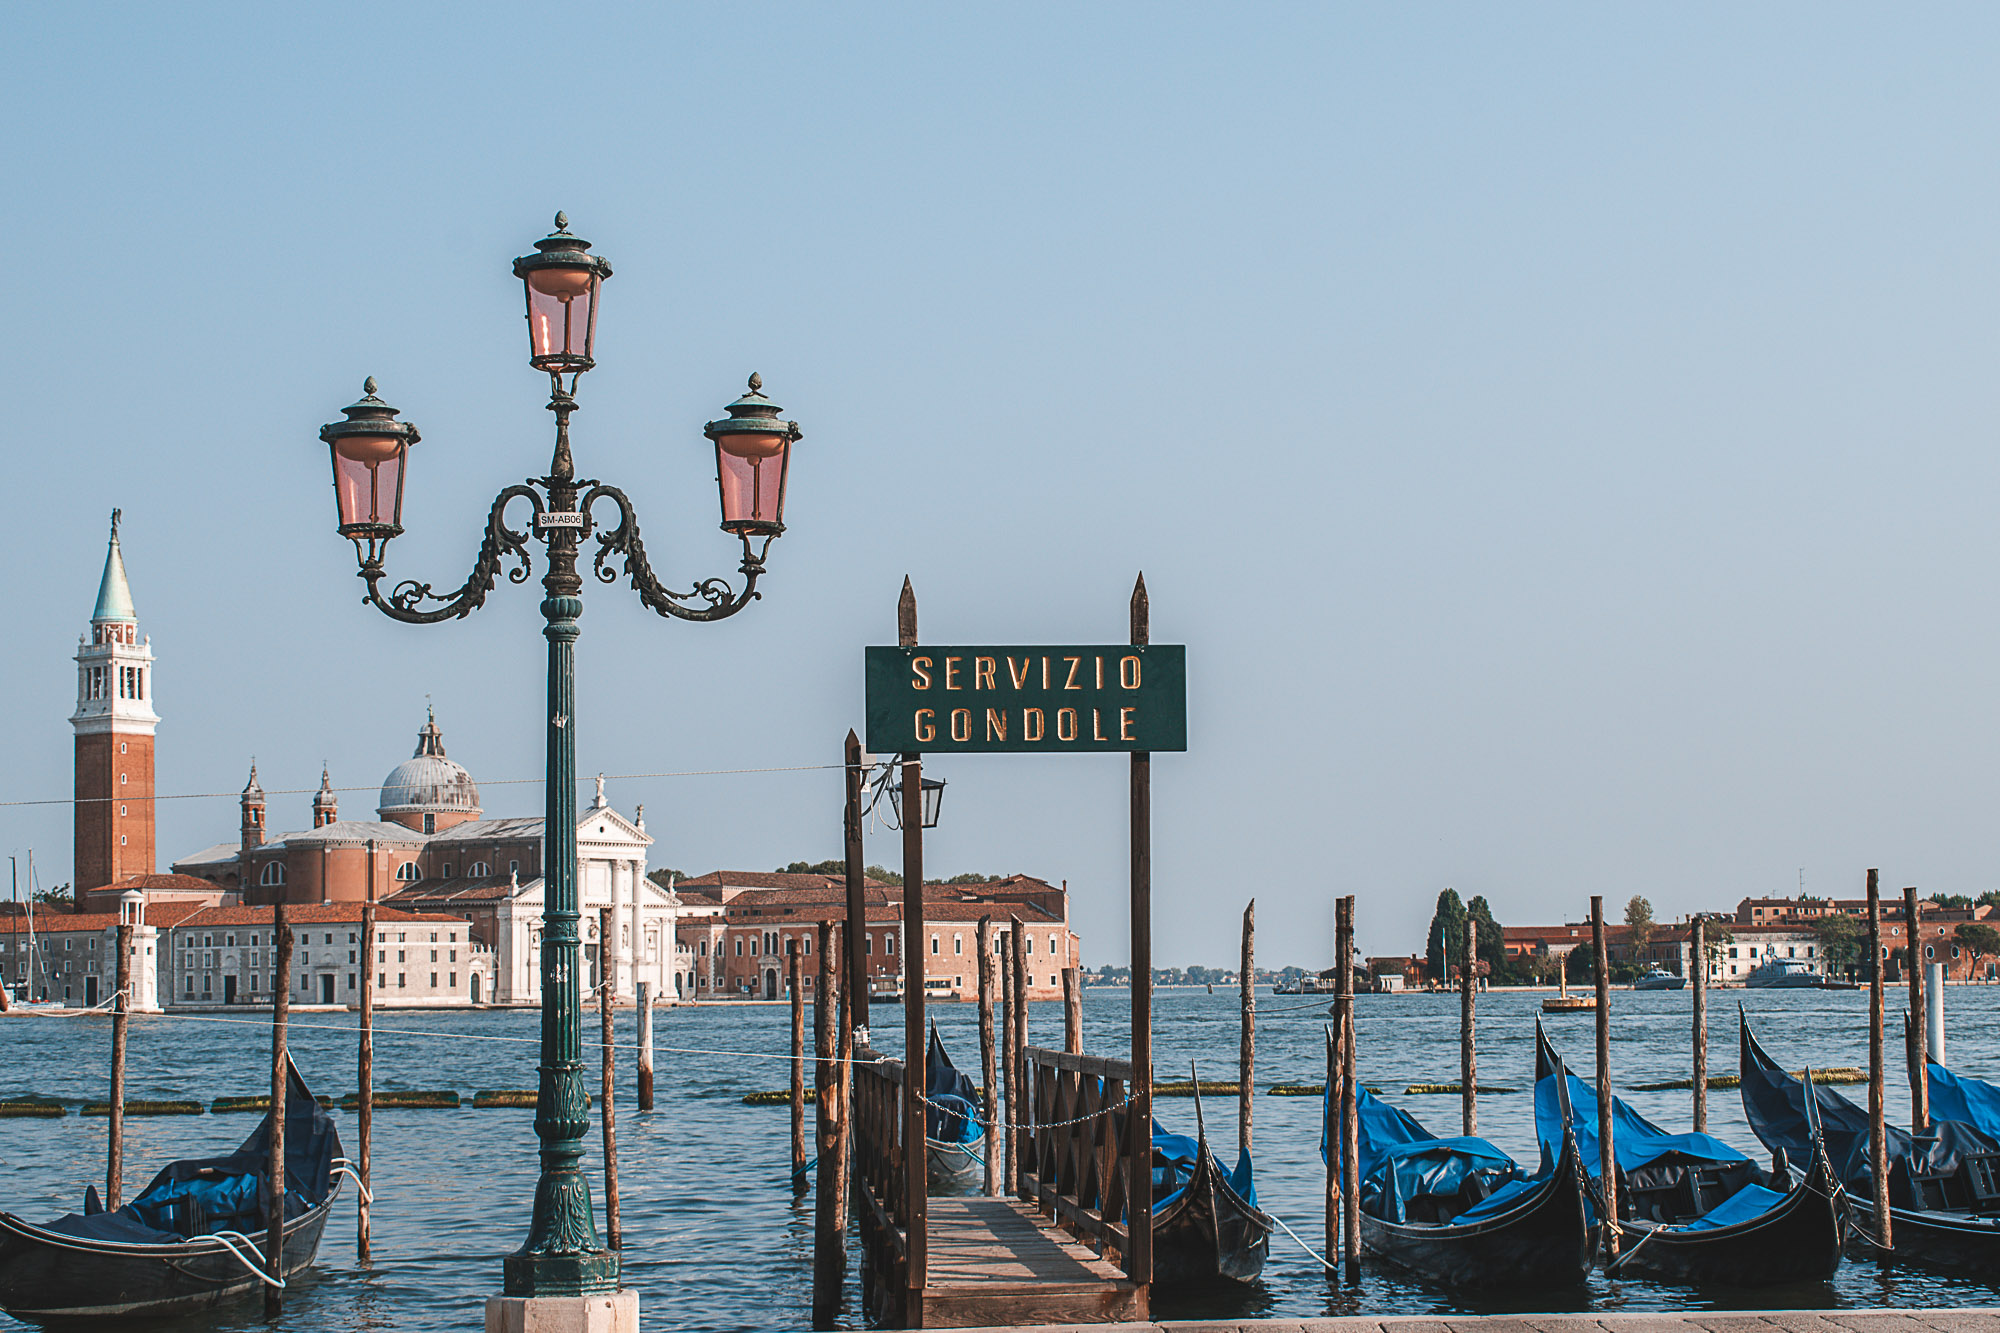 O que fazer em Veneza